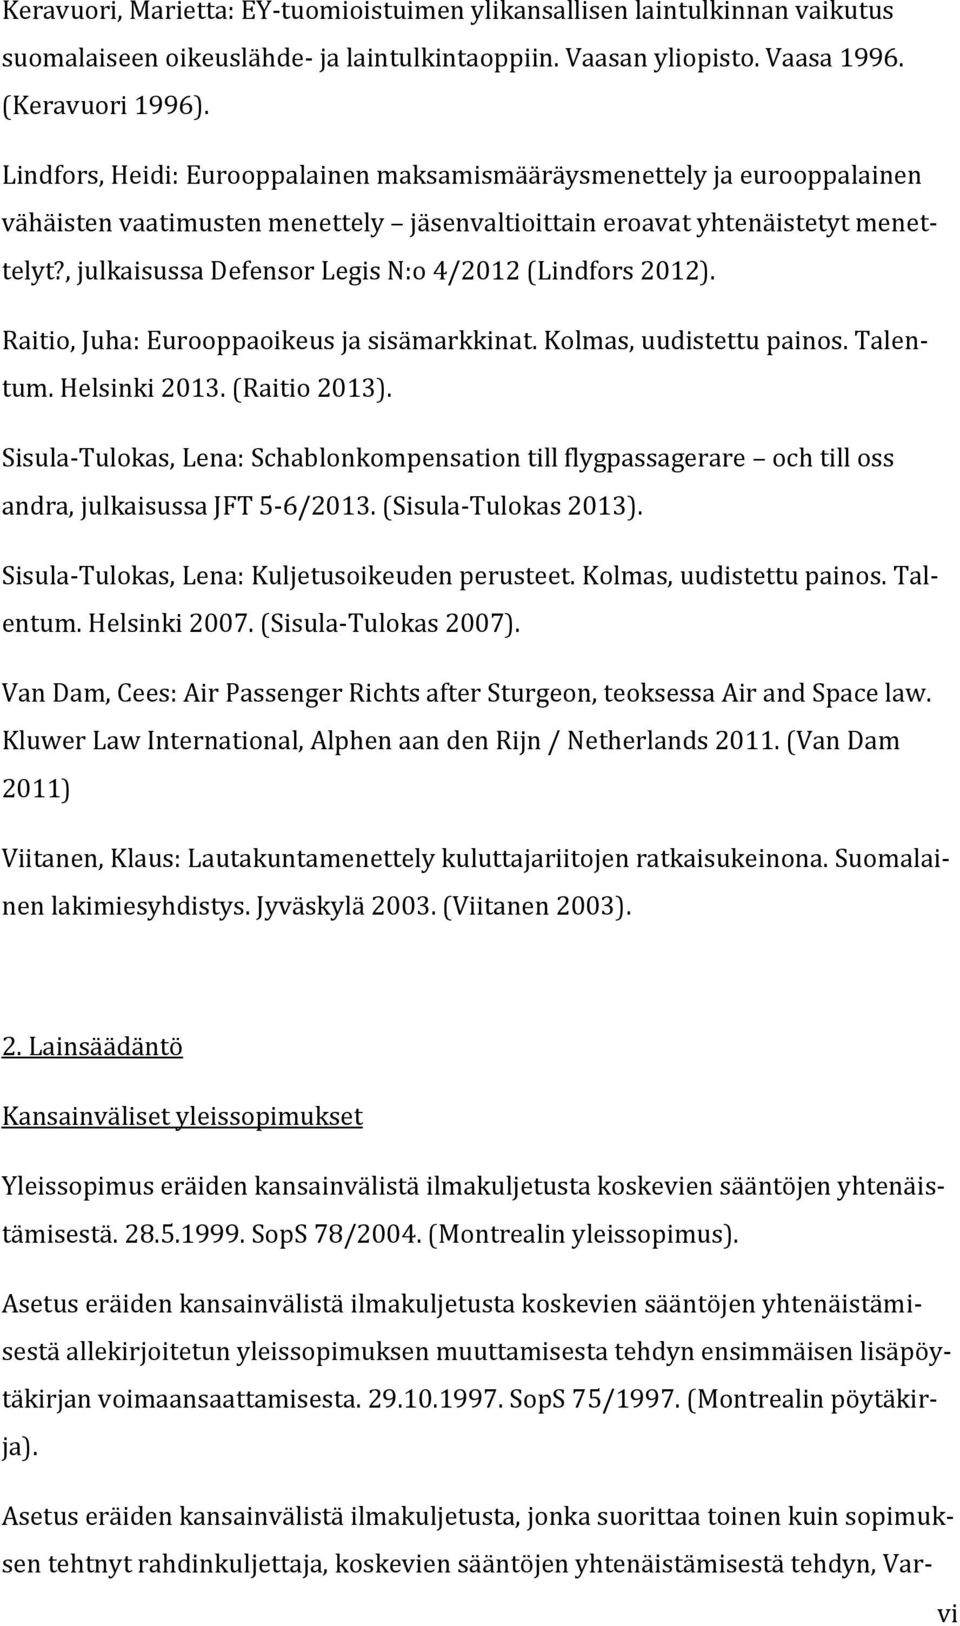 , julkaisussa Defensor Legis N:o 4/2012 (Lindfors 2012). Raitio, Juha: Eurooppaoikeus ja sisämarkkinat. Kolmas, uudistettu painos. Talentum. Helsinki 2013. (Raitio 2013).